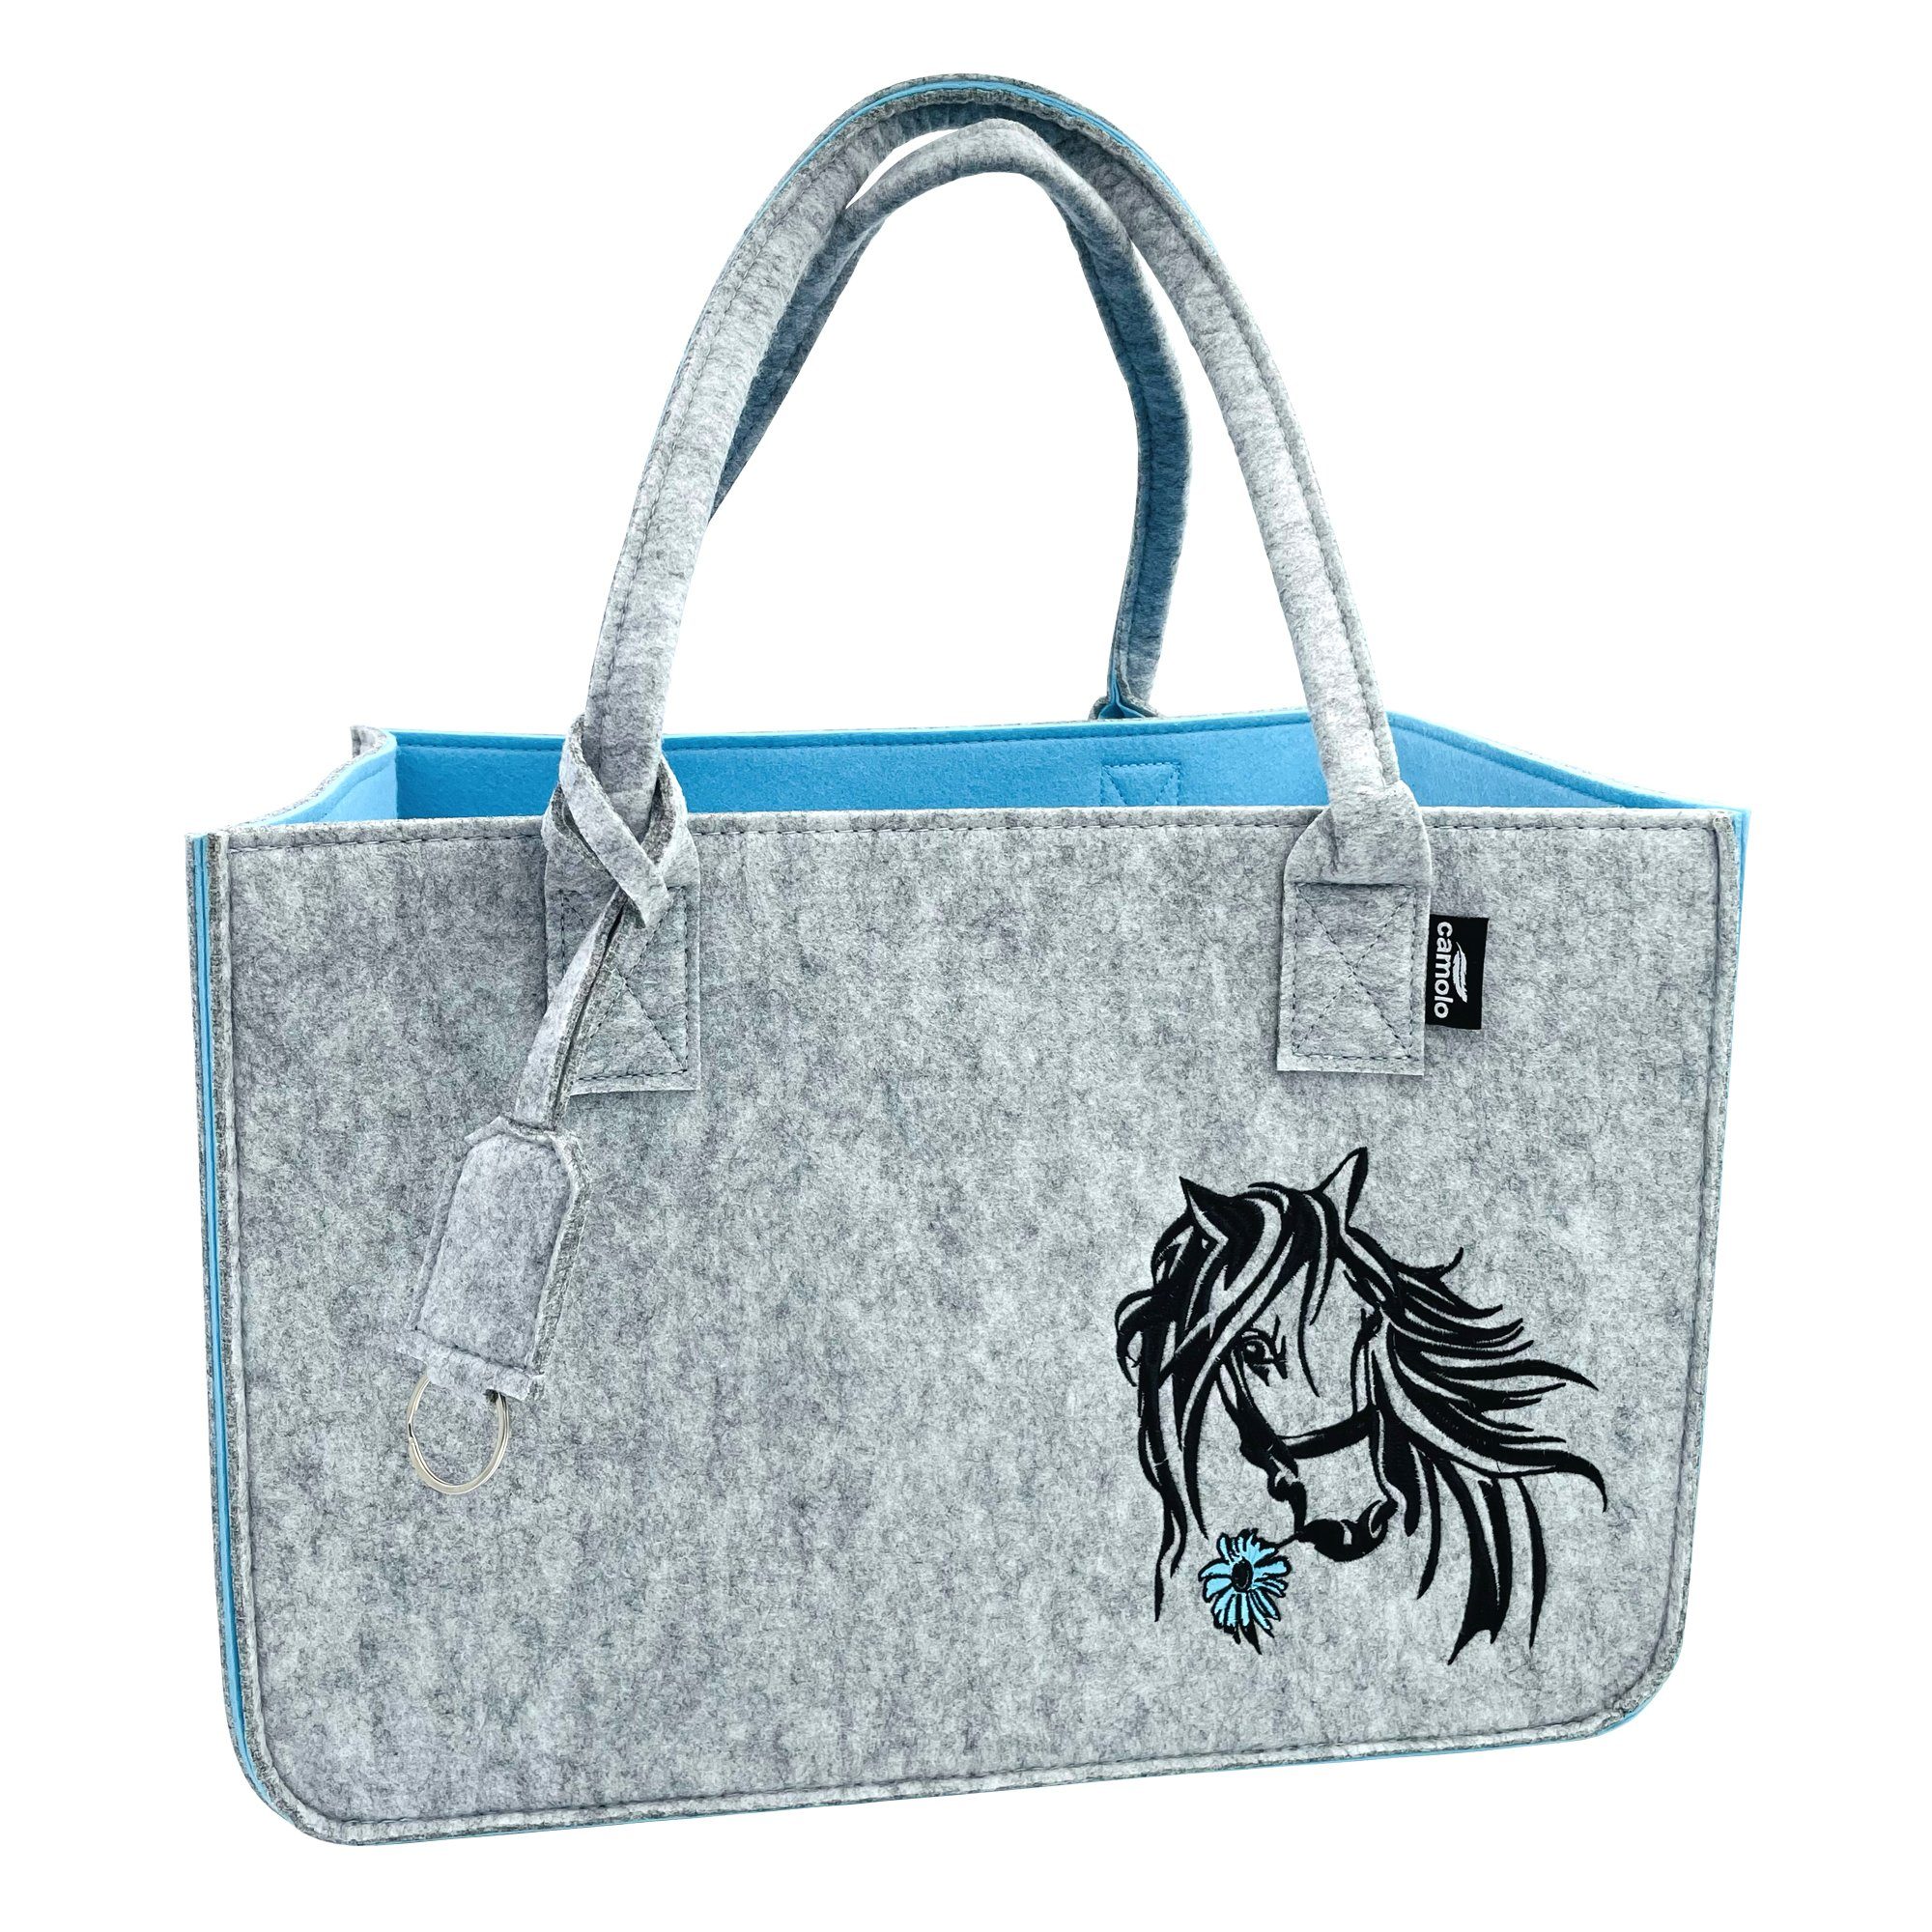 Camolo Tragetasche Filz Einkaufstasche Horse mit Henkel Grau/Blau